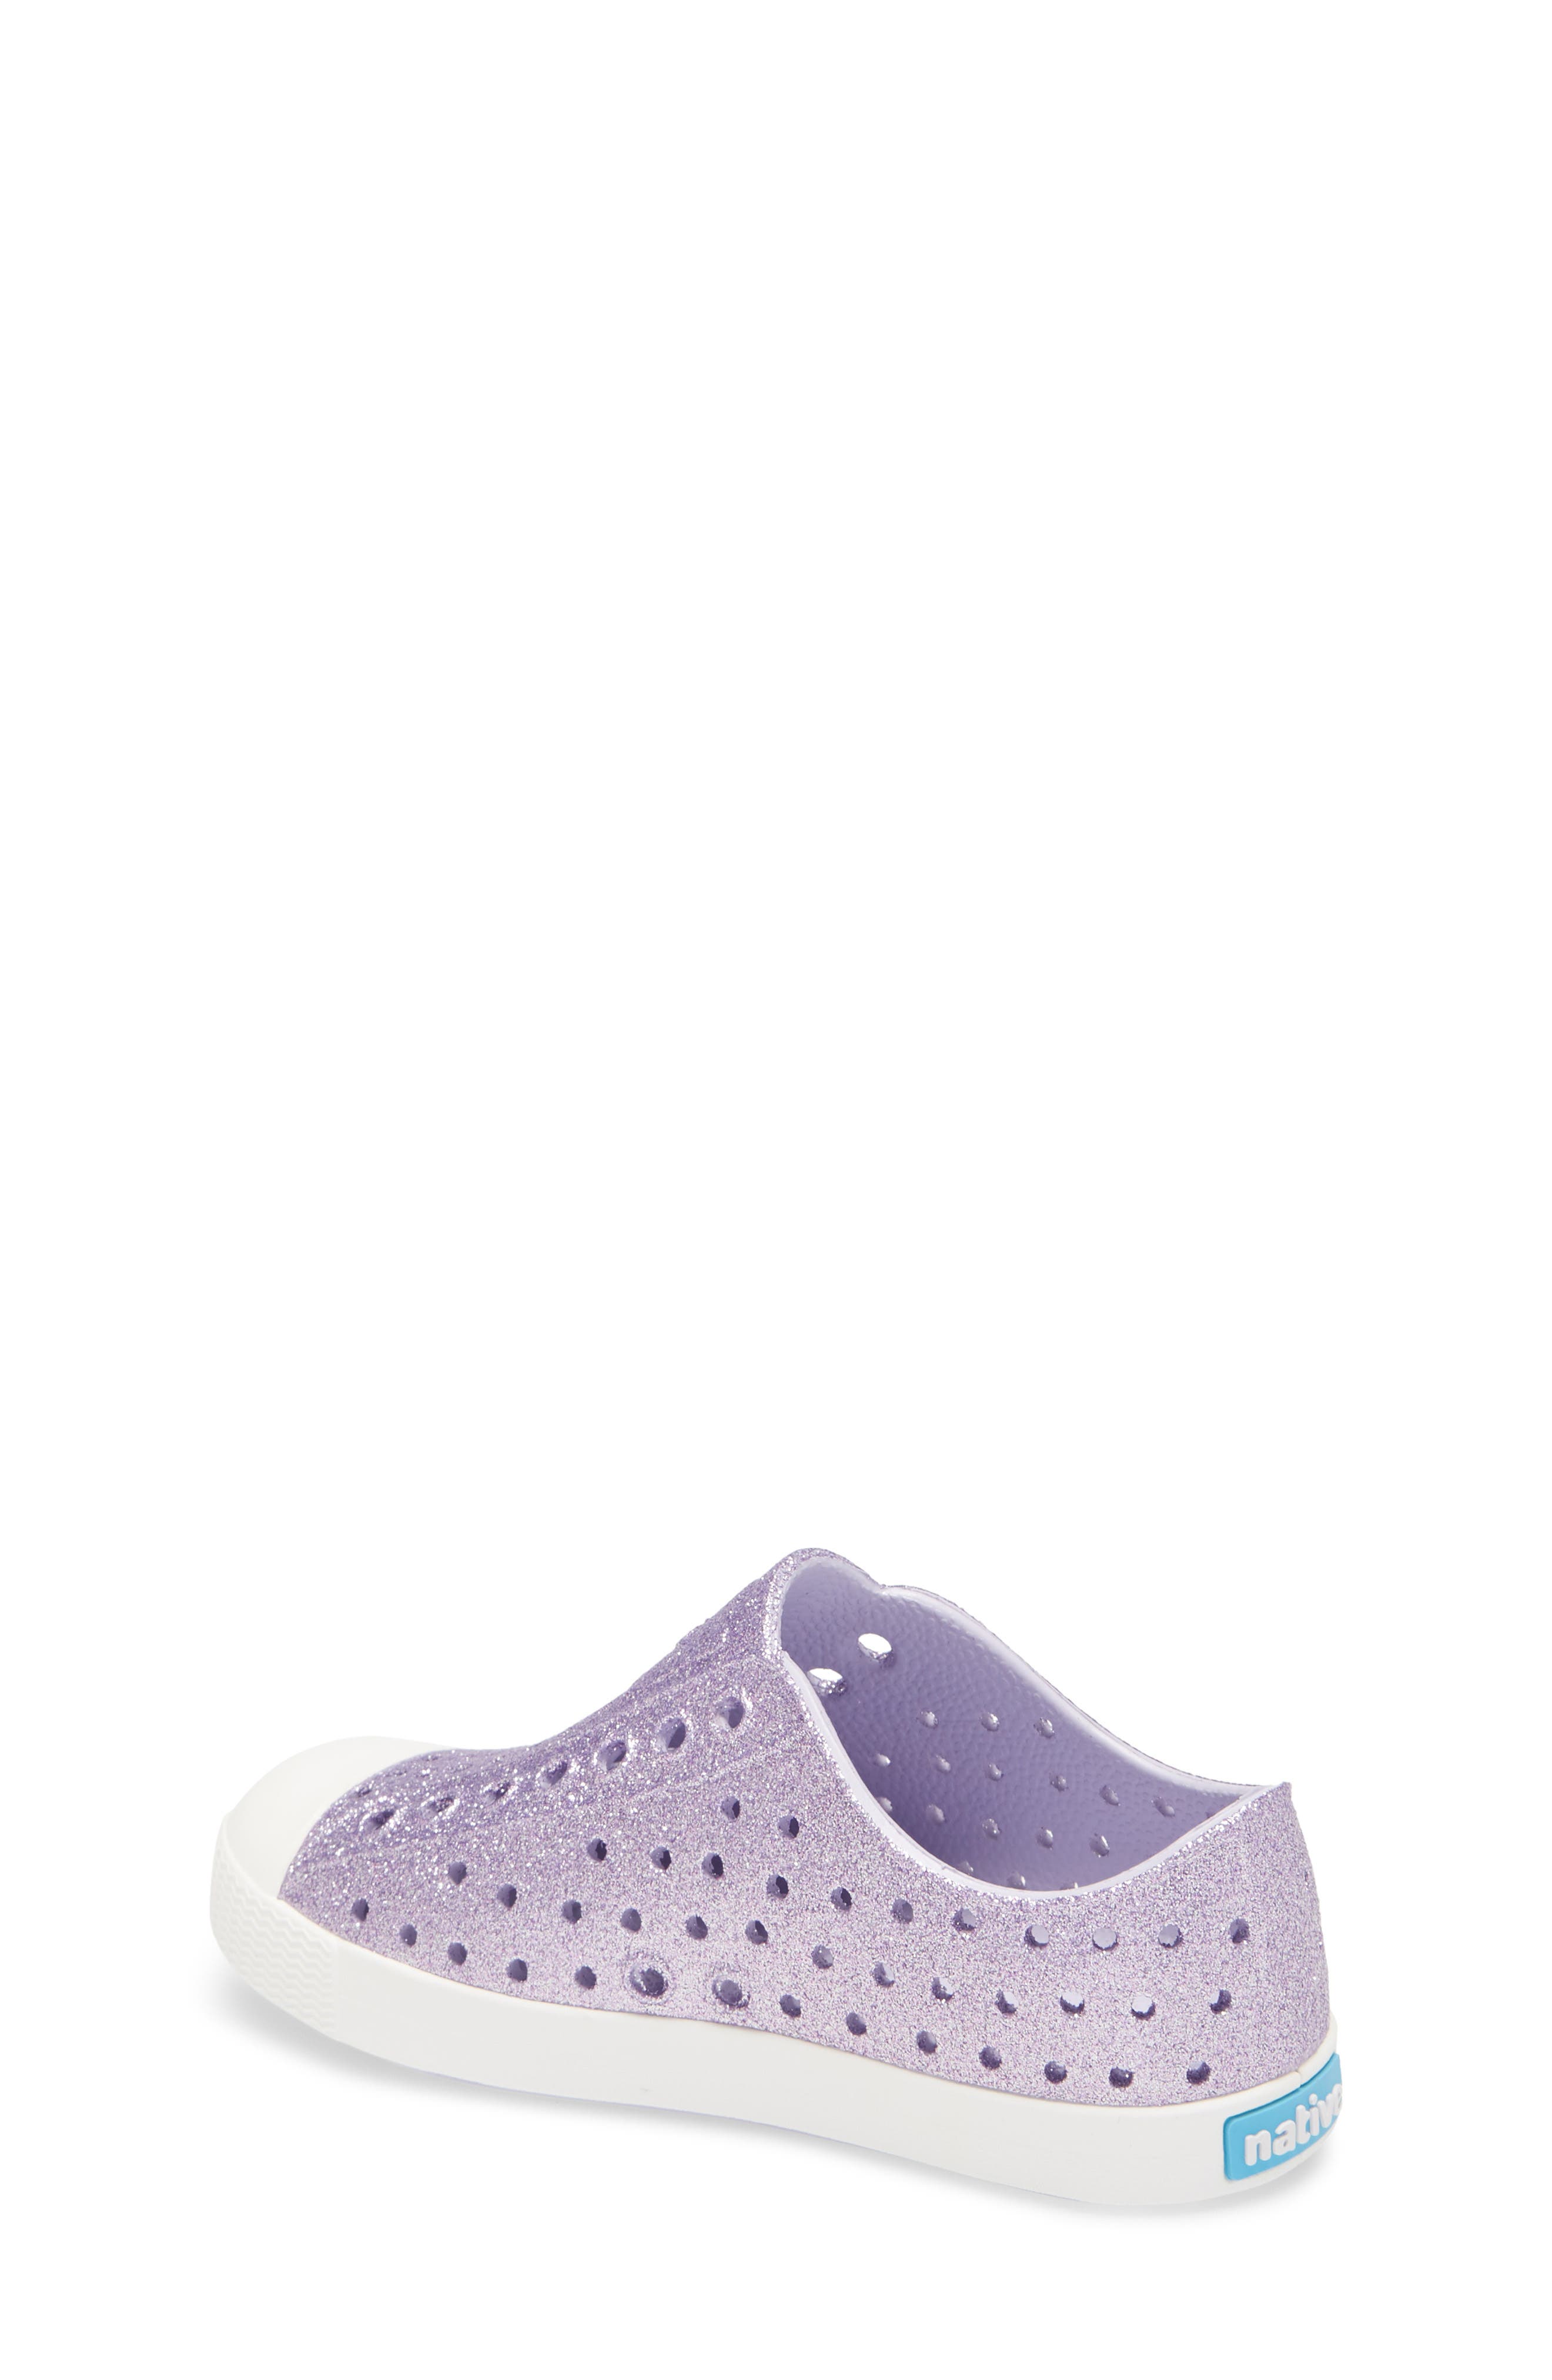 Little Kid Native Kids Shoes Girls Jefferson Bling Glitter Origami Purple Bling/Shell White 